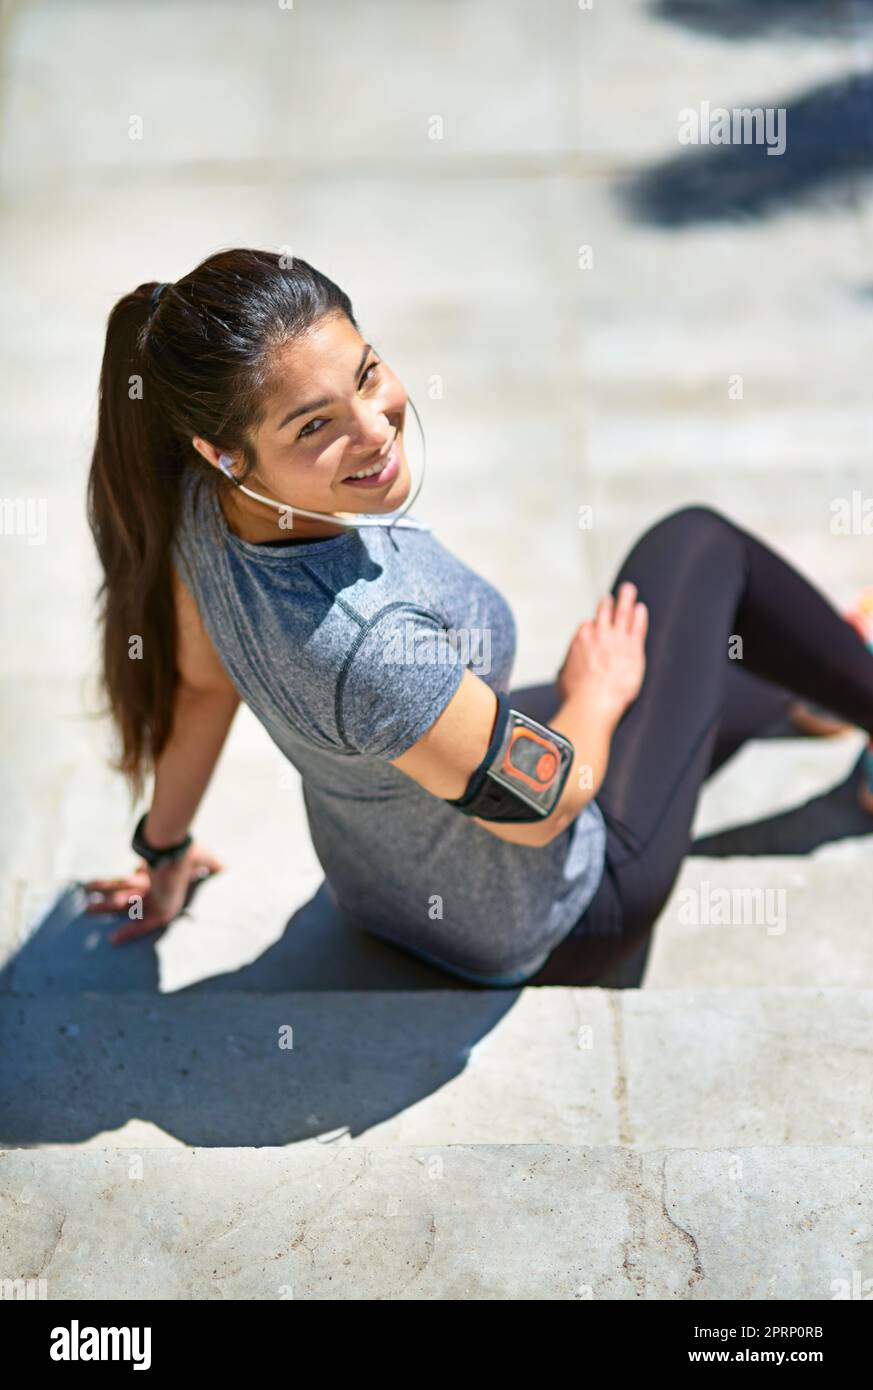 Motiviert, fit zu werden. Eine sportliche junge Frau, die Musik hört, während sie draußen auf Treppen sitzt. Stockfoto